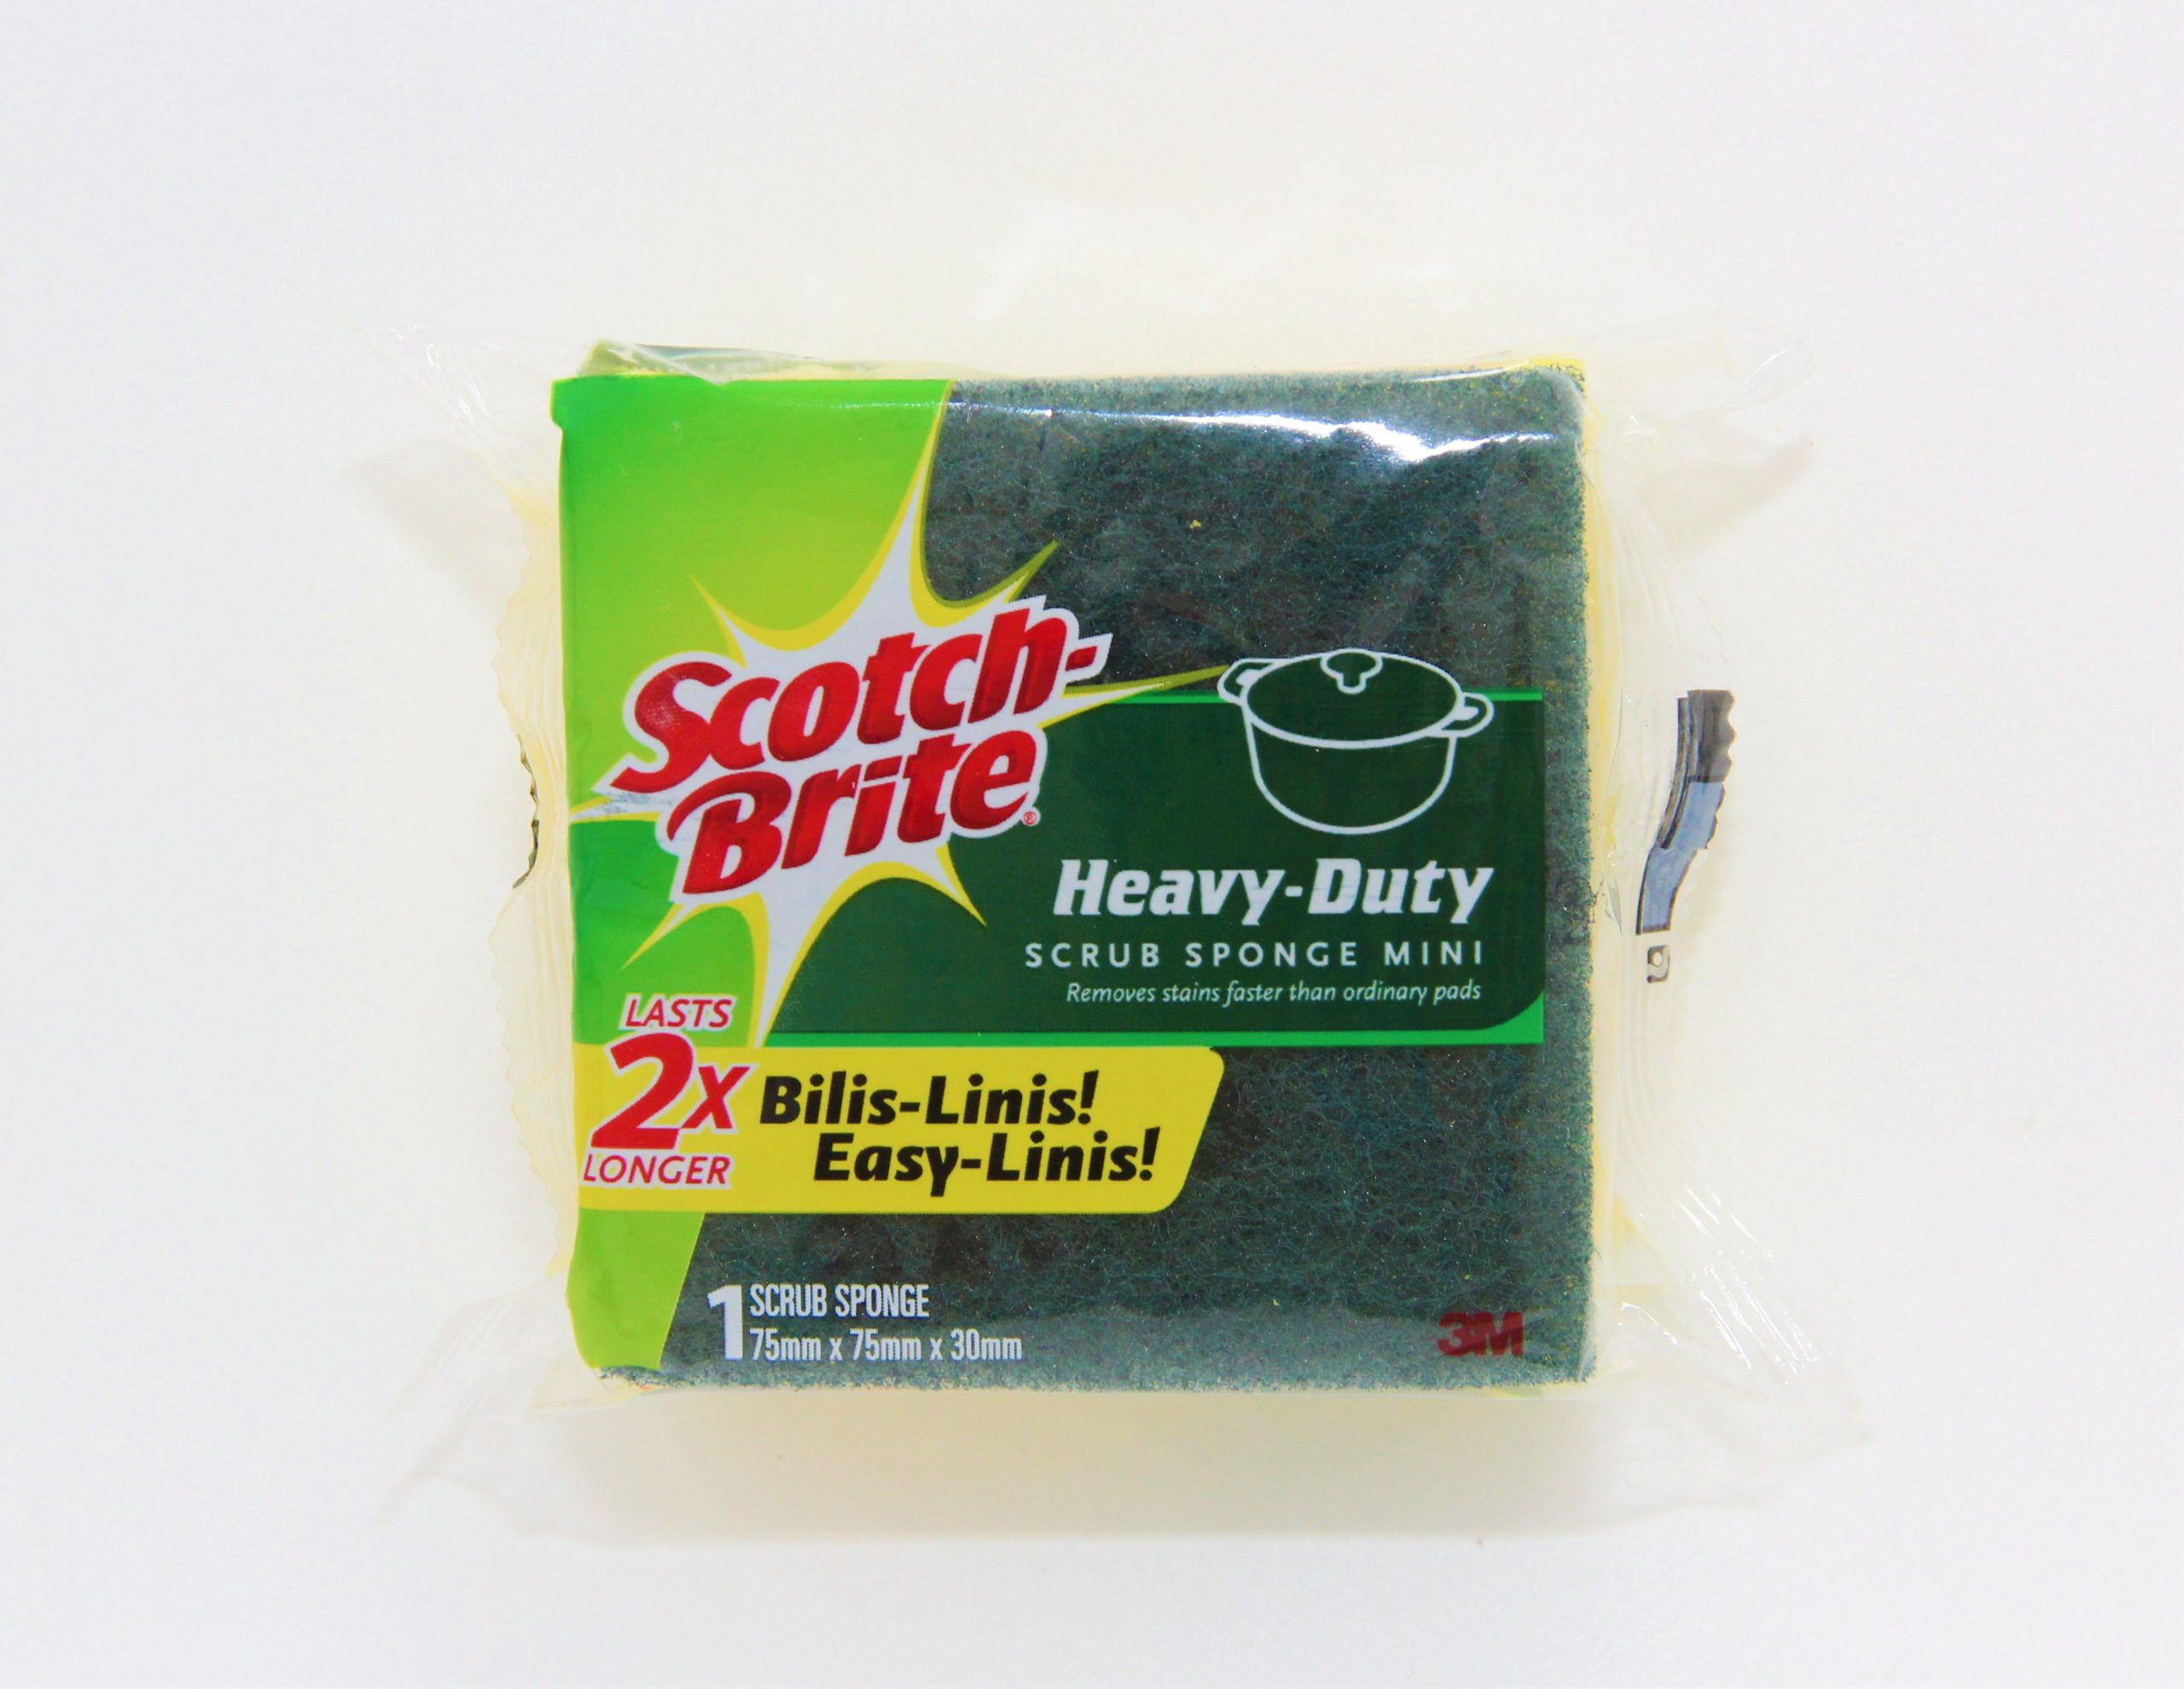 SCOTCH-BRITE HEAVY-DUTY SCRUB SPONGE MINI - Iloilo Supermart